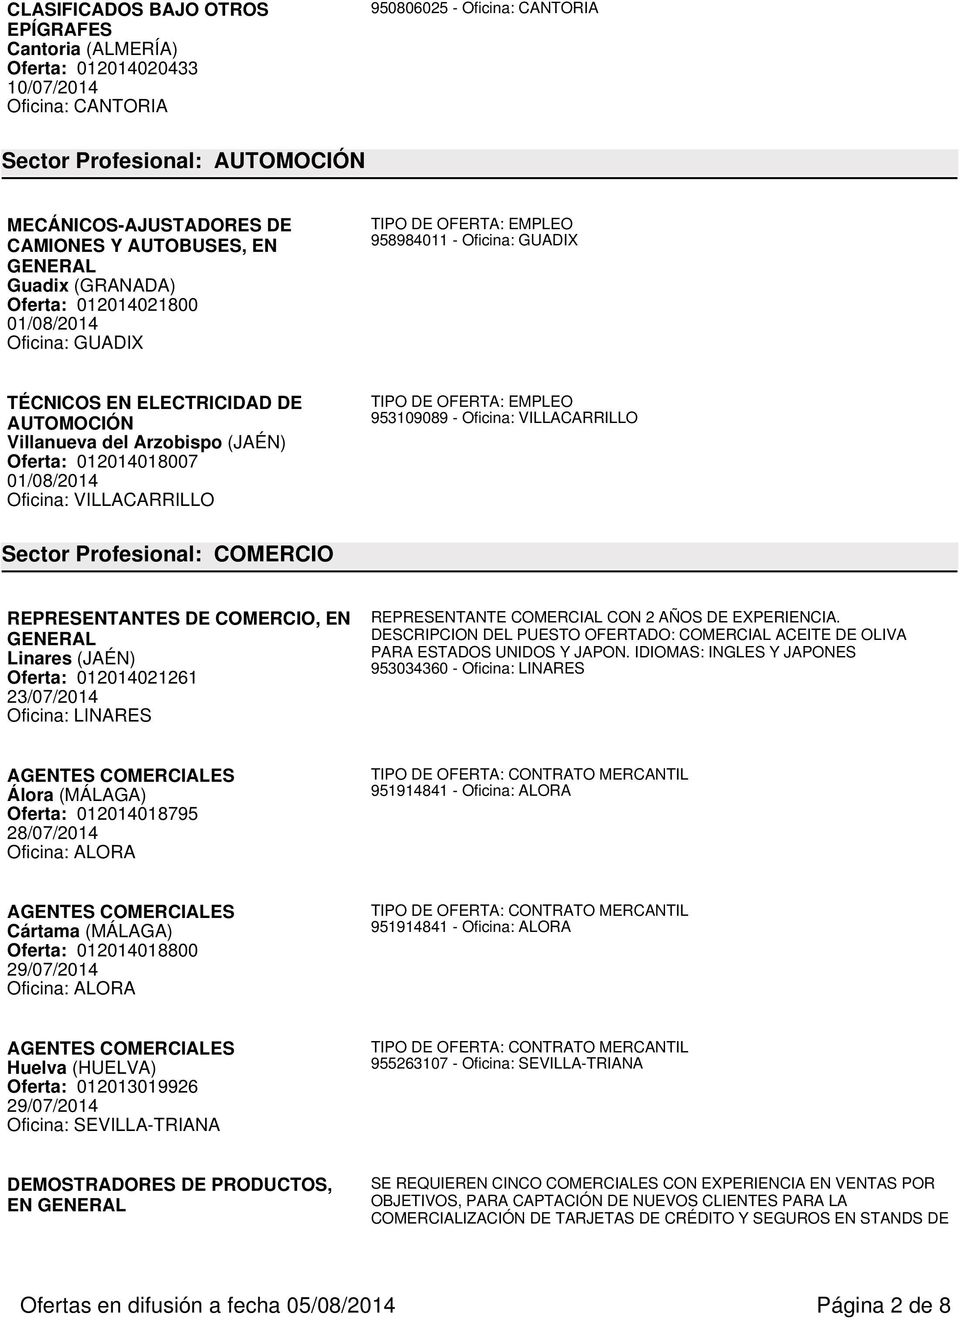 COMERCIO REPRESENTANTES DE COMERCIO, EN Linares (JAÉN) Oferta: 012014021261 23/07/2014 Oficina: LINARES REPRESENTANTE COMERCIAL CON 2 AÑOS DE EXPERIENCIA.